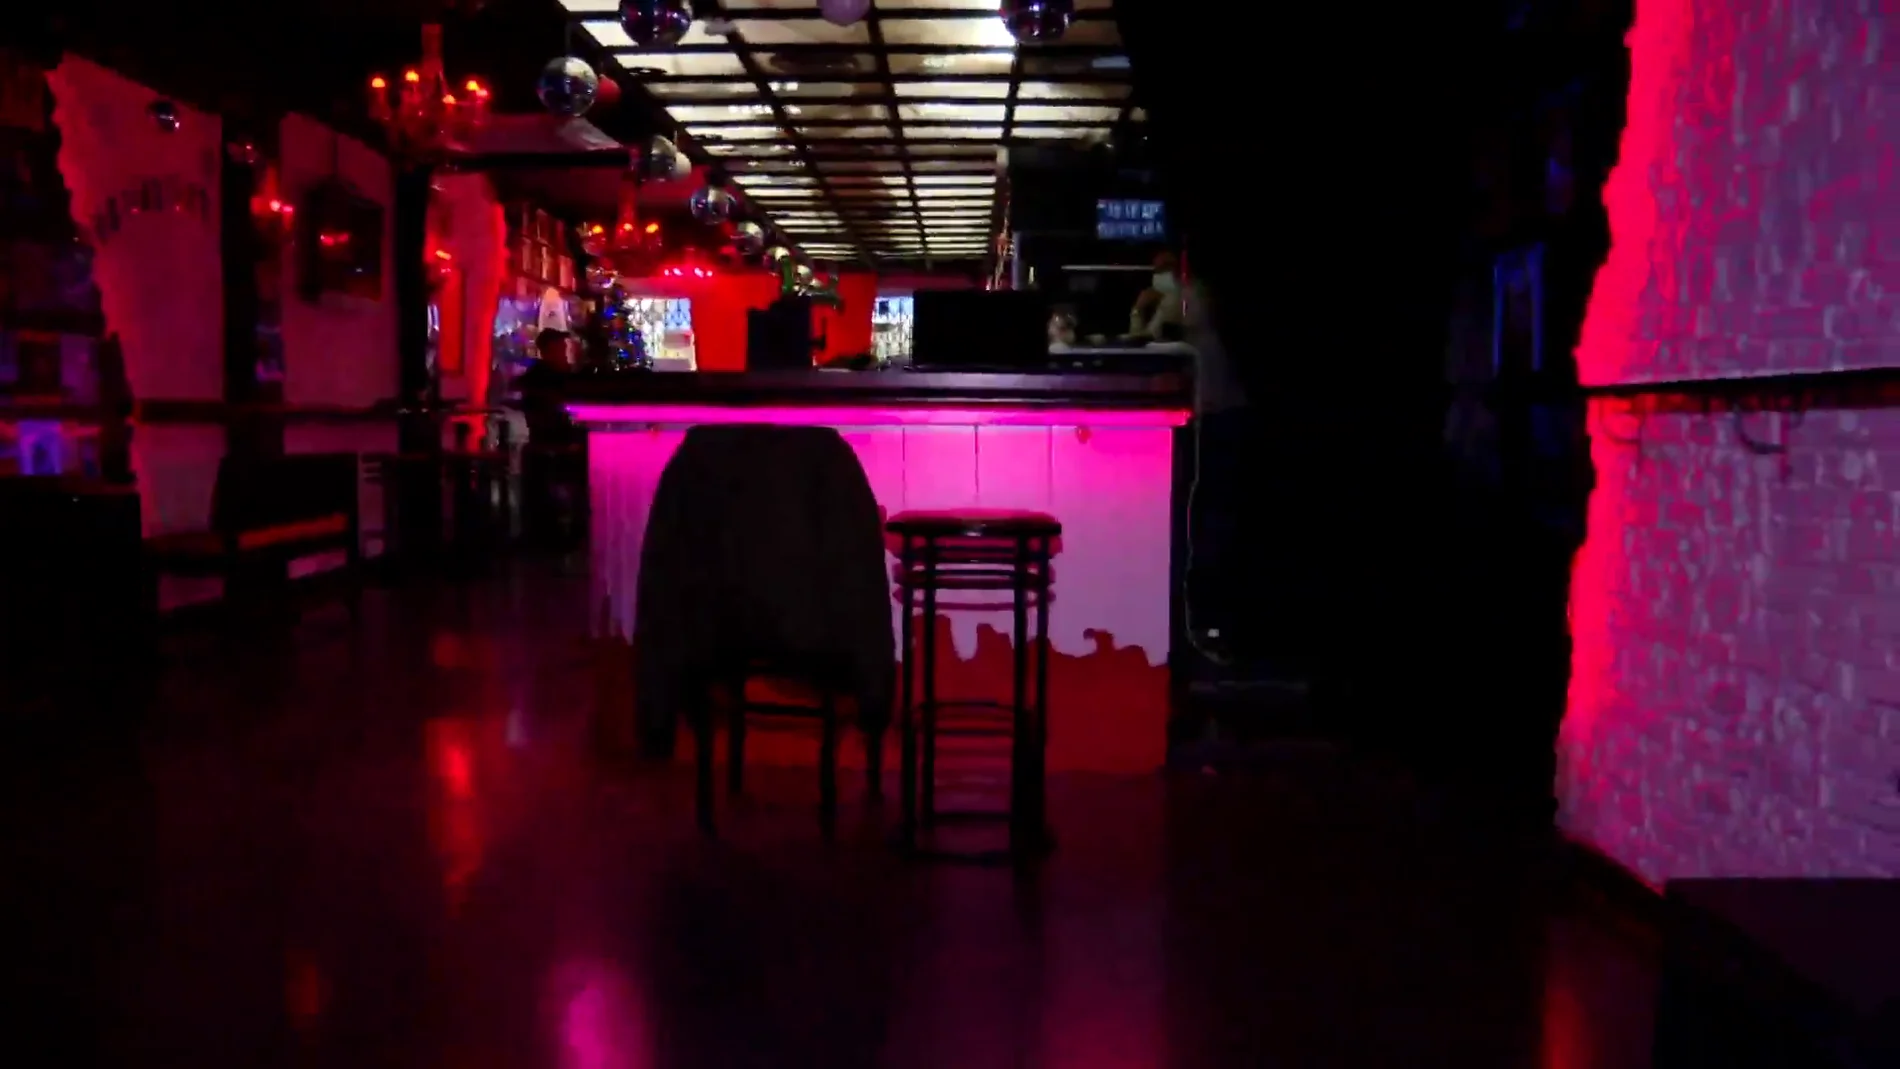 En el interior de las discotecas se pondrán códigos QR a modo informativo